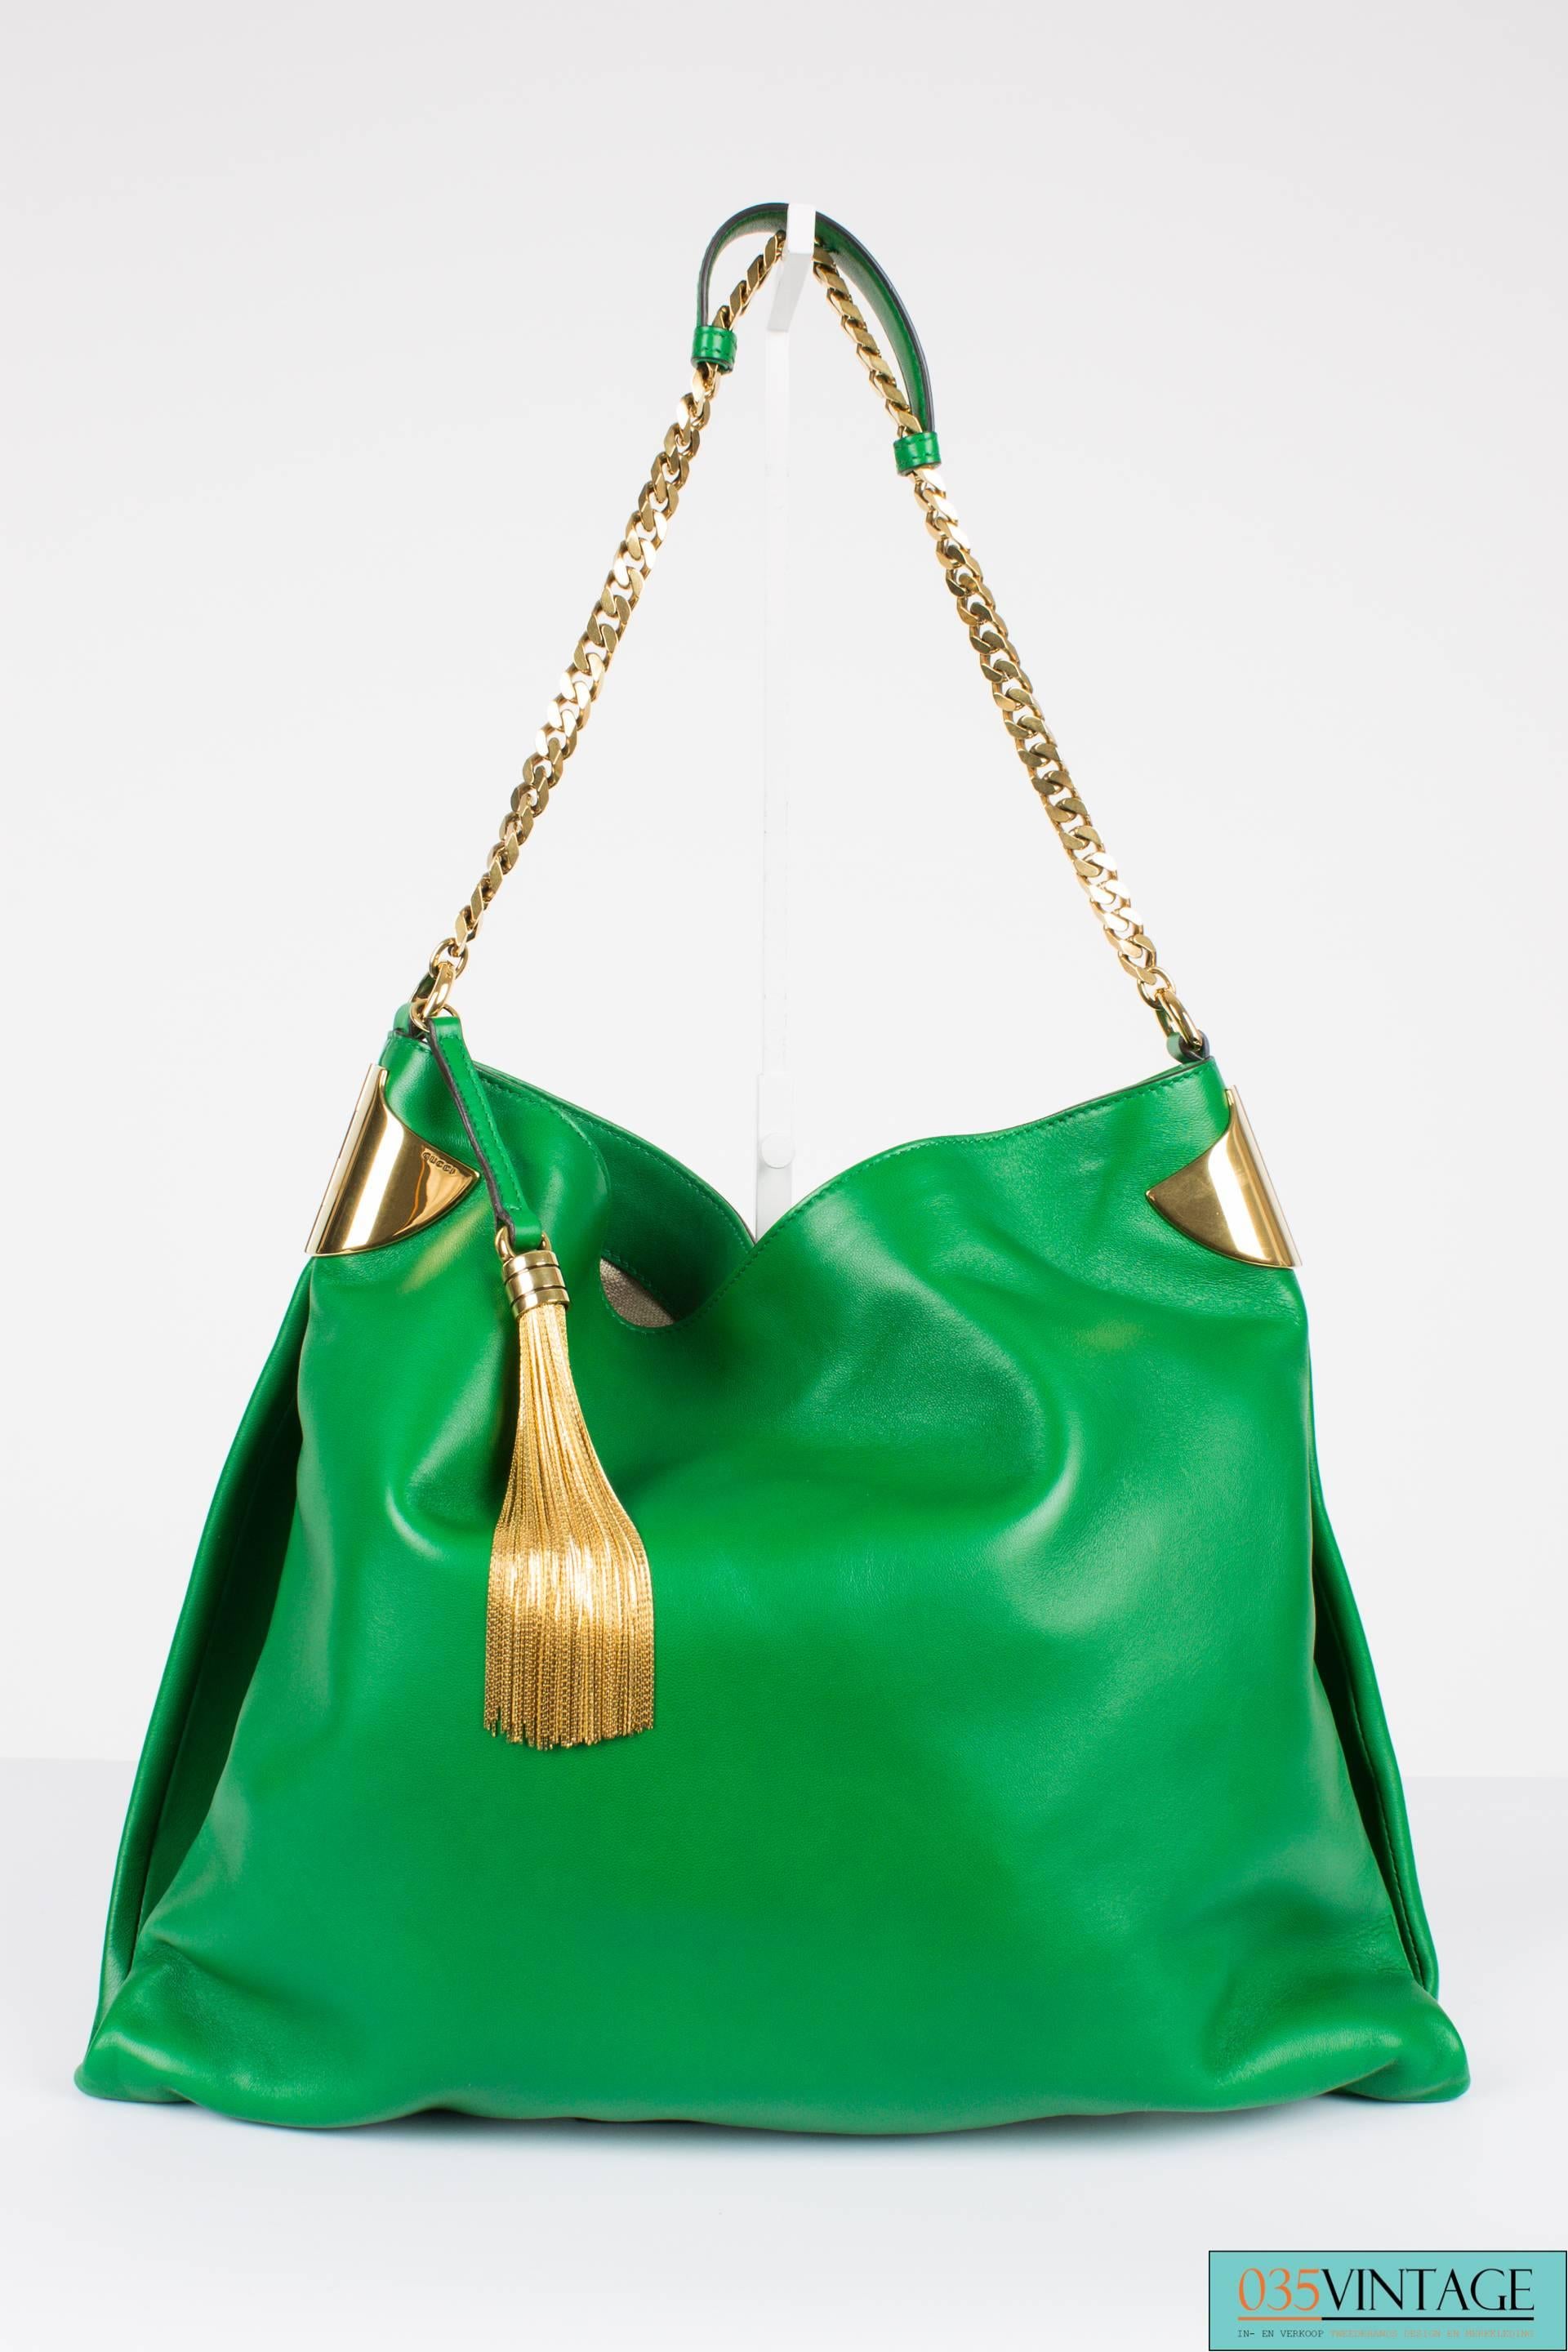 Gucci 1970 Medium Shoulder Bag - green leather/gold 3